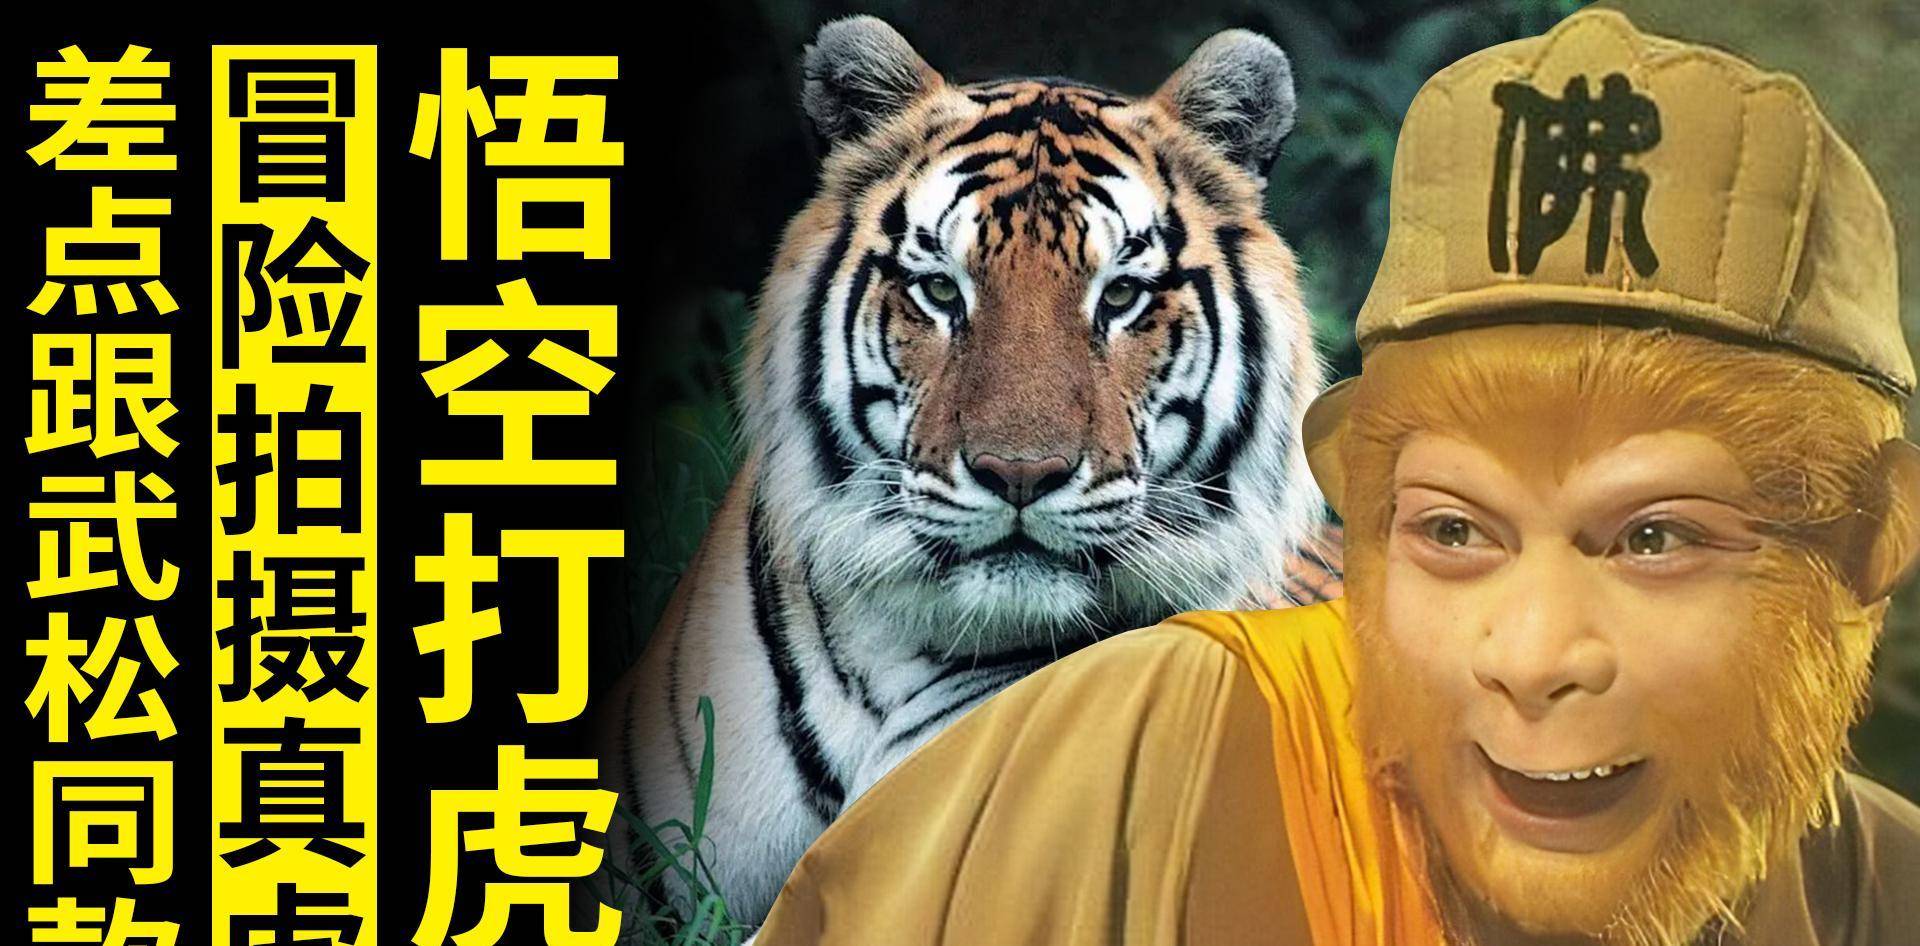 苹果和老虎的英文翻译版:《西游记》里的老虎是摄像师冒险真实拍的，差点是武松打过的那只